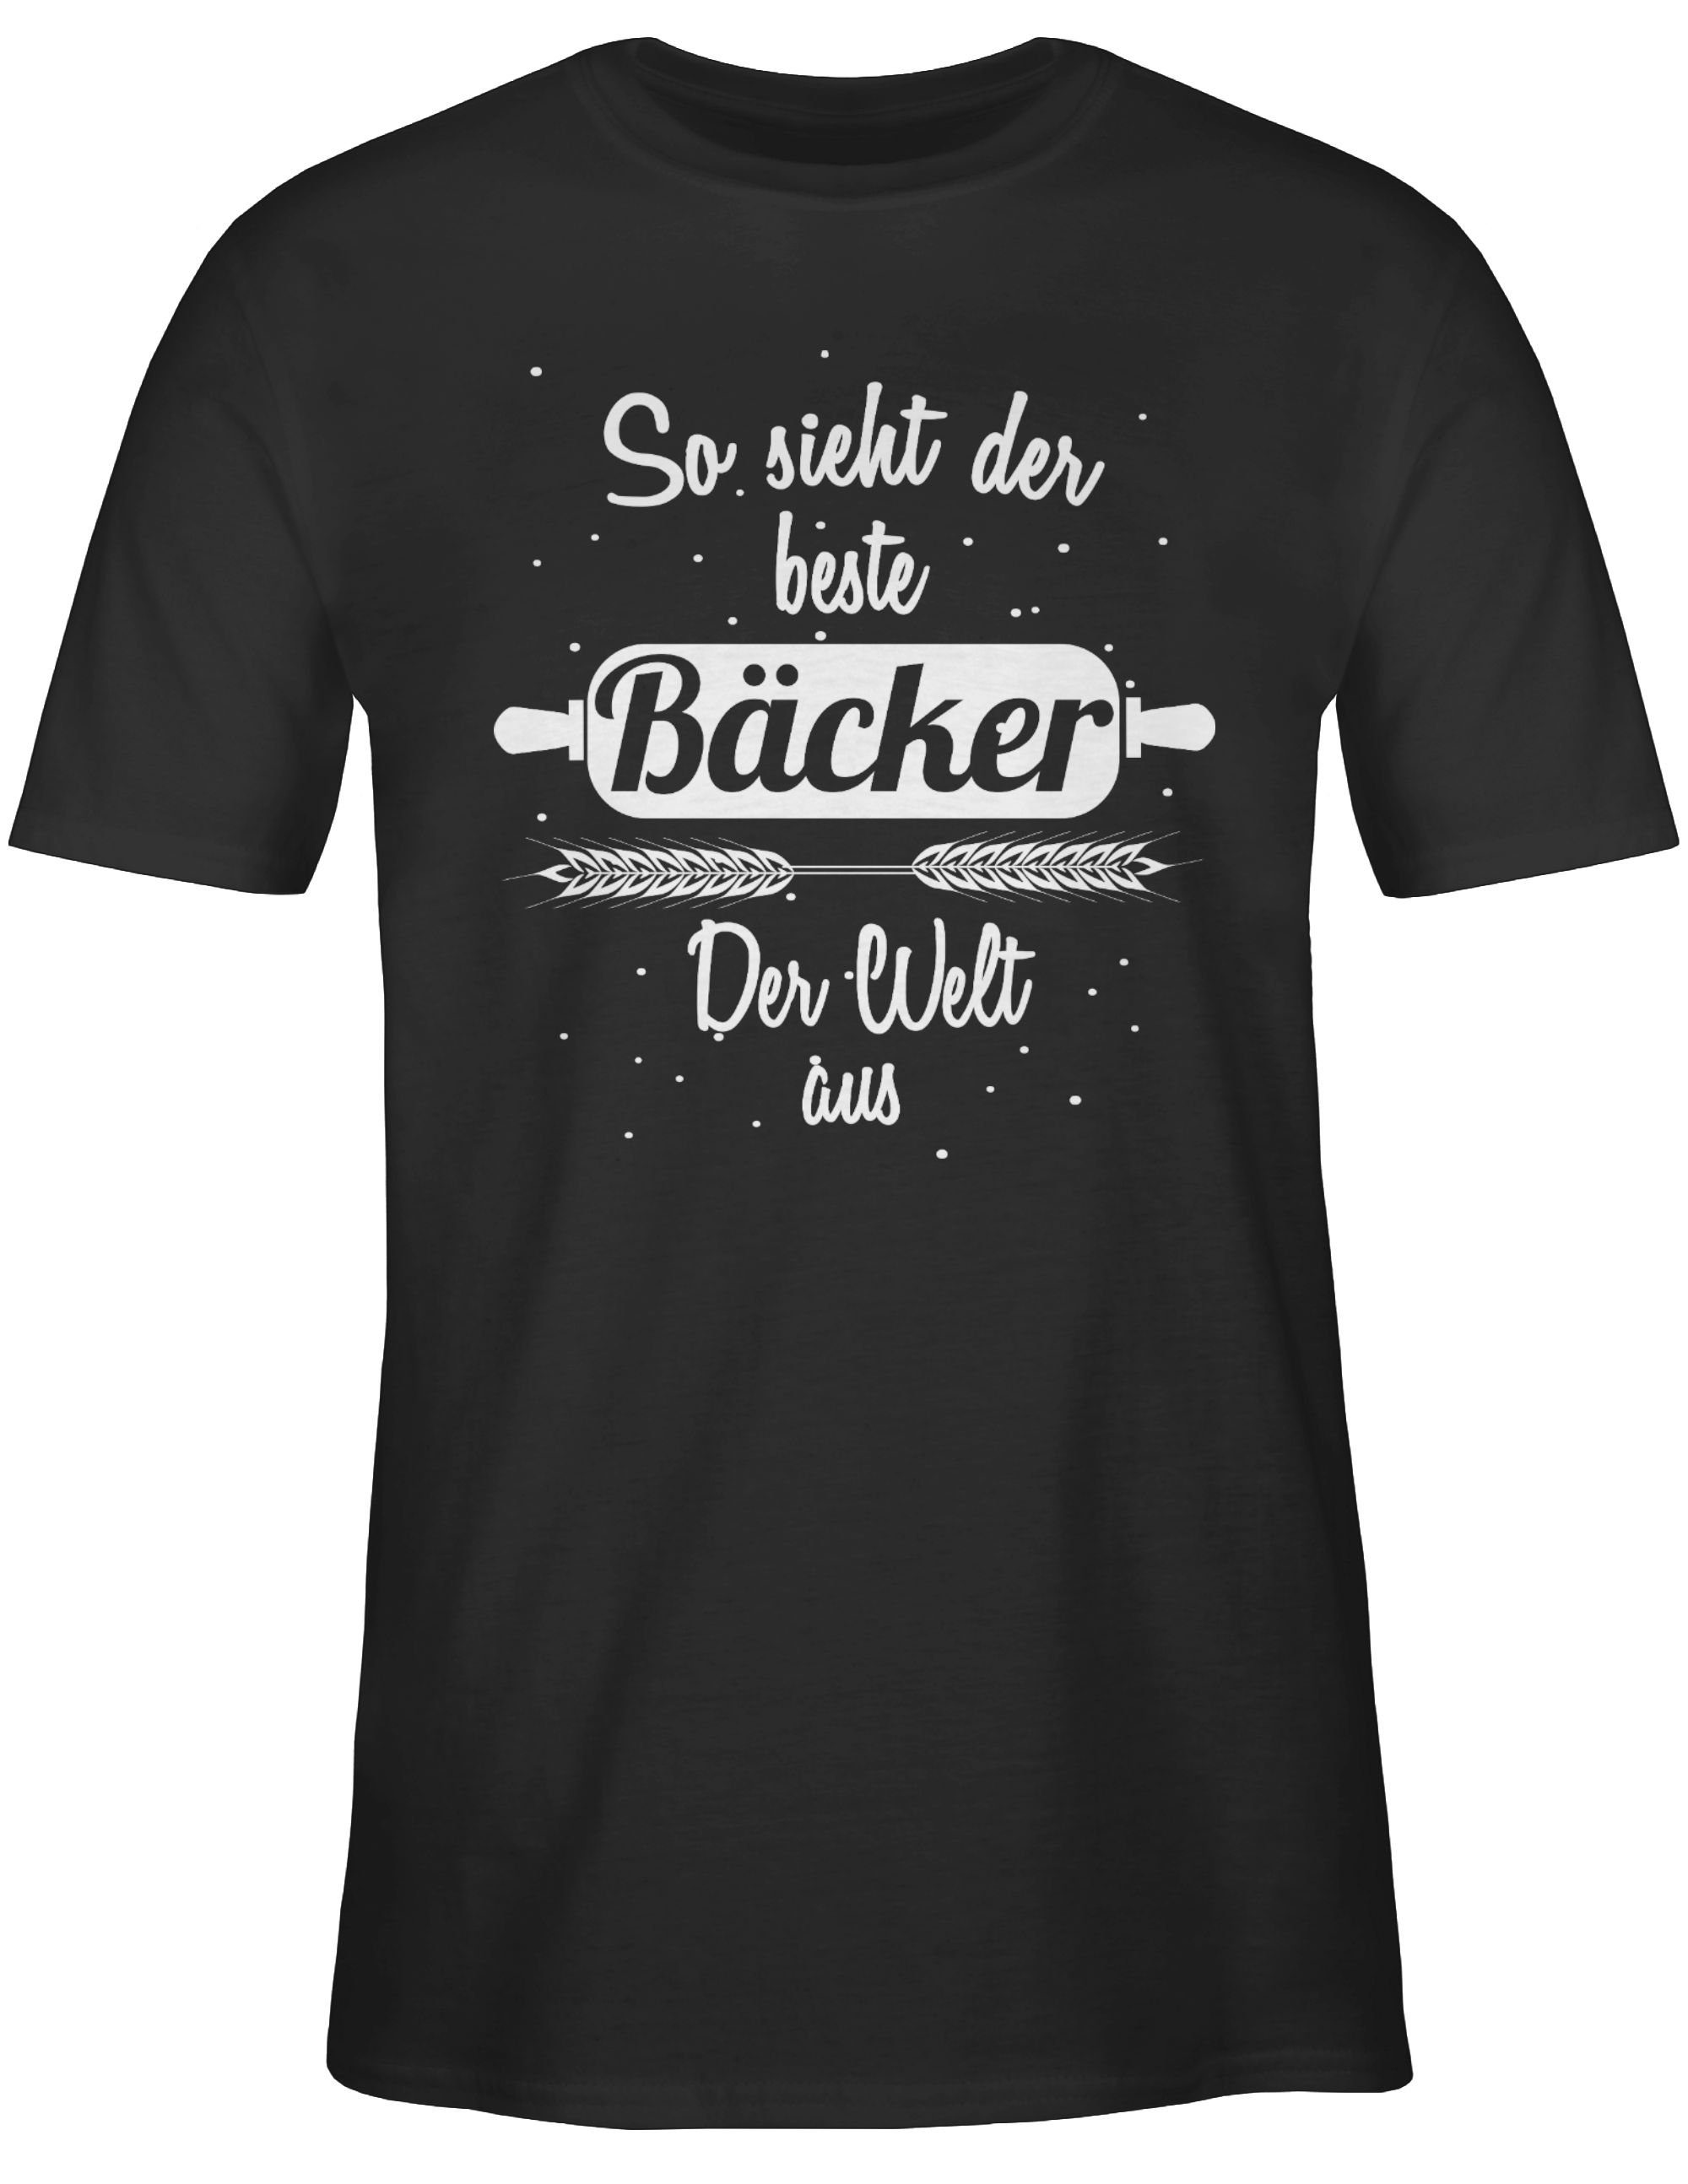 So und Bäcker Job der aus T-Shirt der Schwarz Geschenke 1 Beruf Welt sieht Shirtracer beste